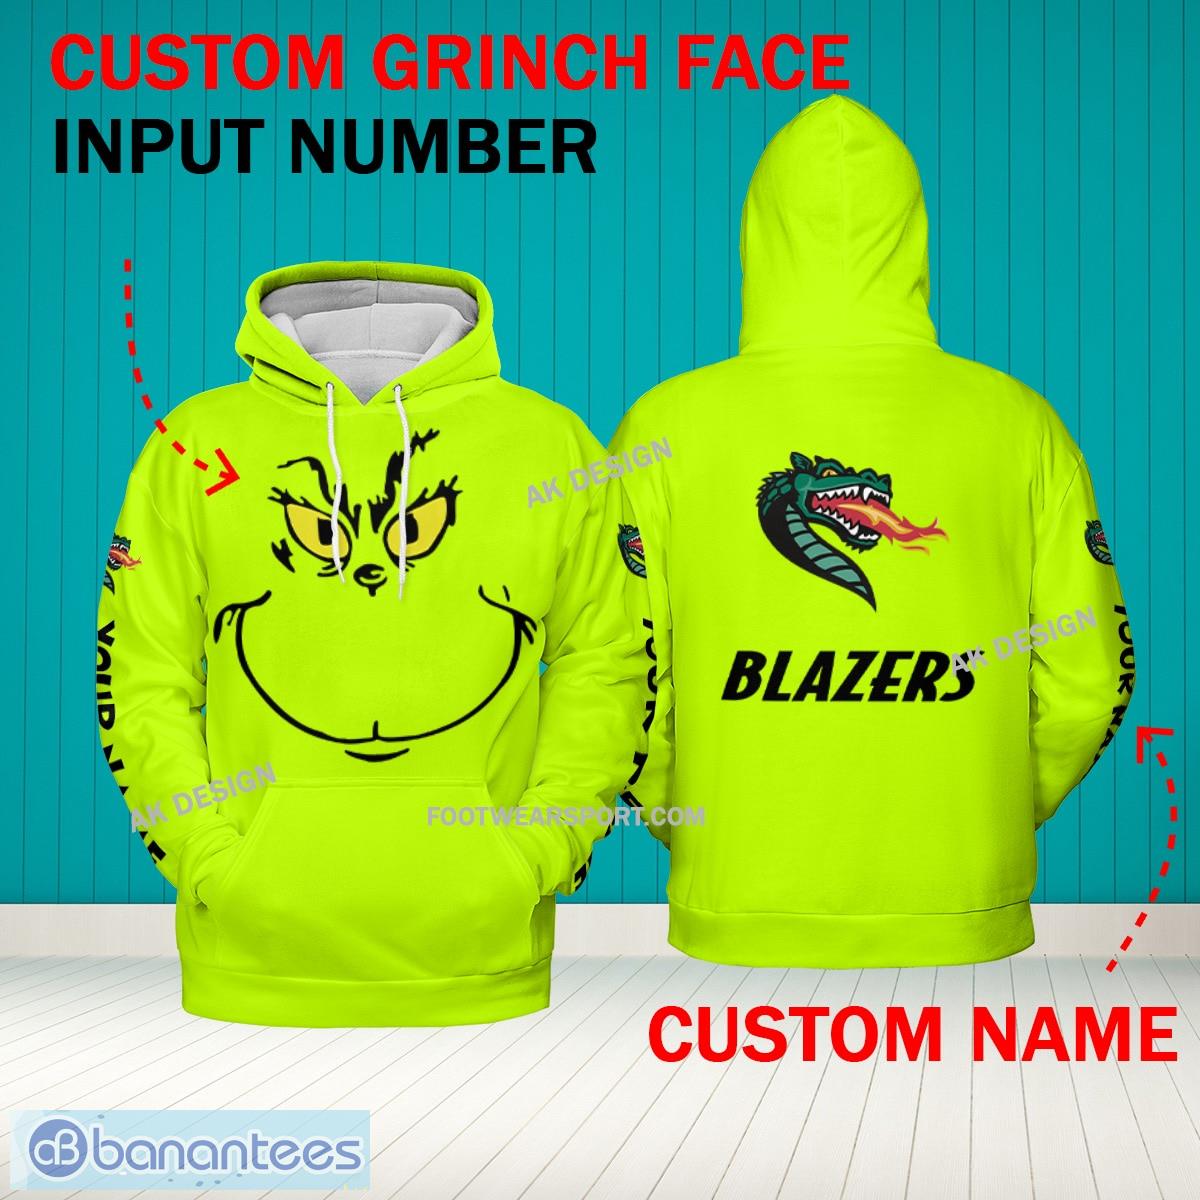 Grinch Face UAB Blazers 3D Hoodie, Zip Hoodie, Sweater Green AOP Custom Number And Name - Grinch Face NCAA UAB Blazers 3D Hoodie